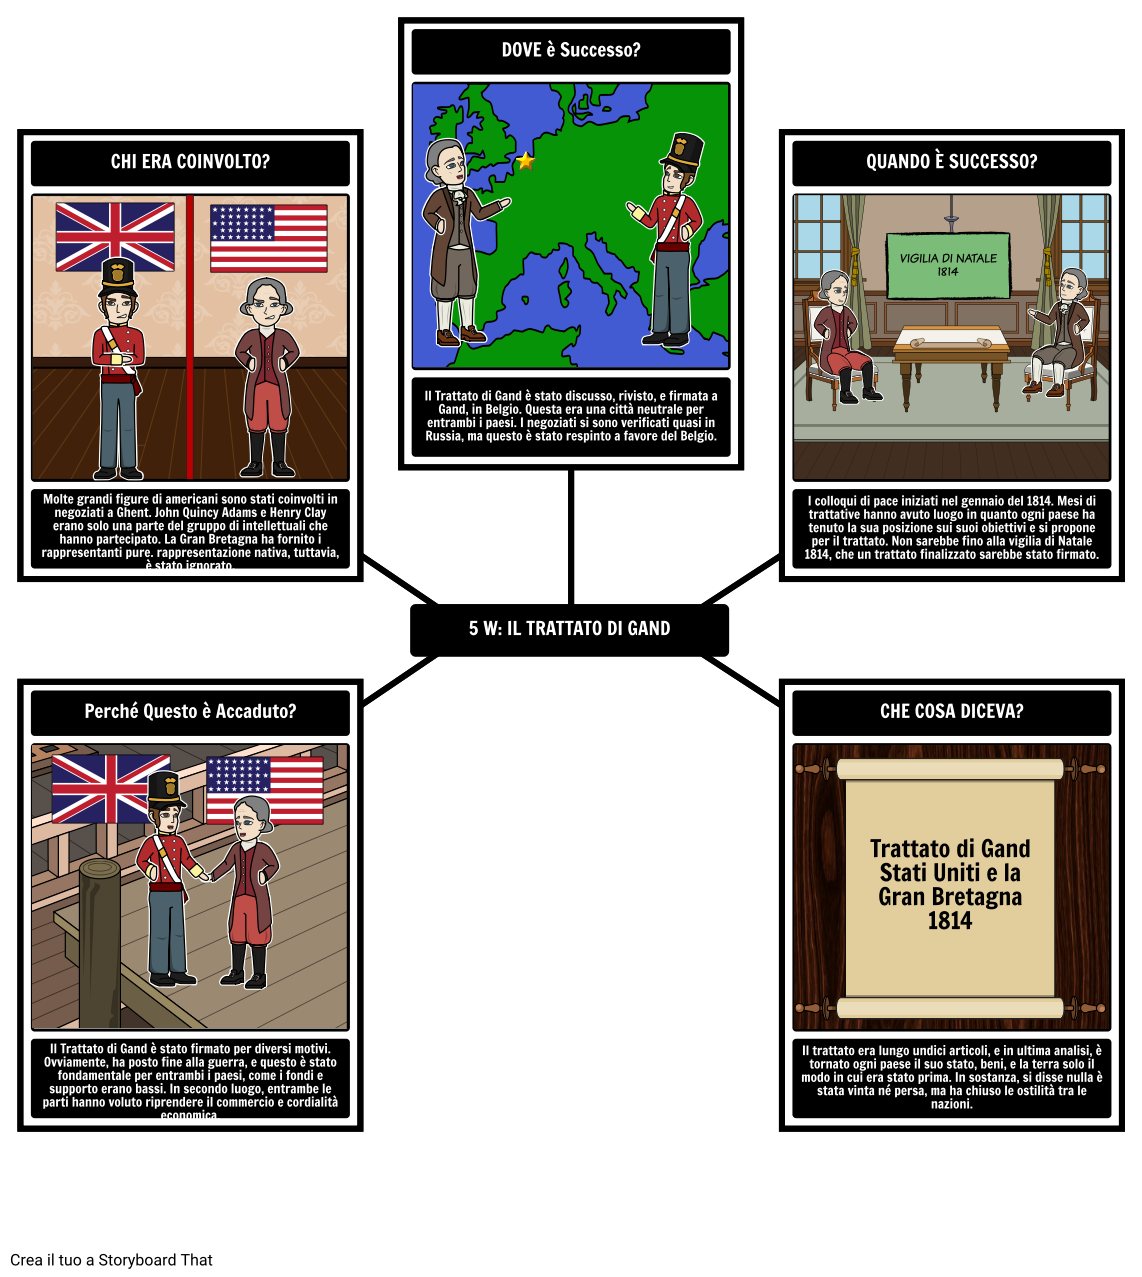 La guerra del 1812 - 5 W del Trattato di Gand